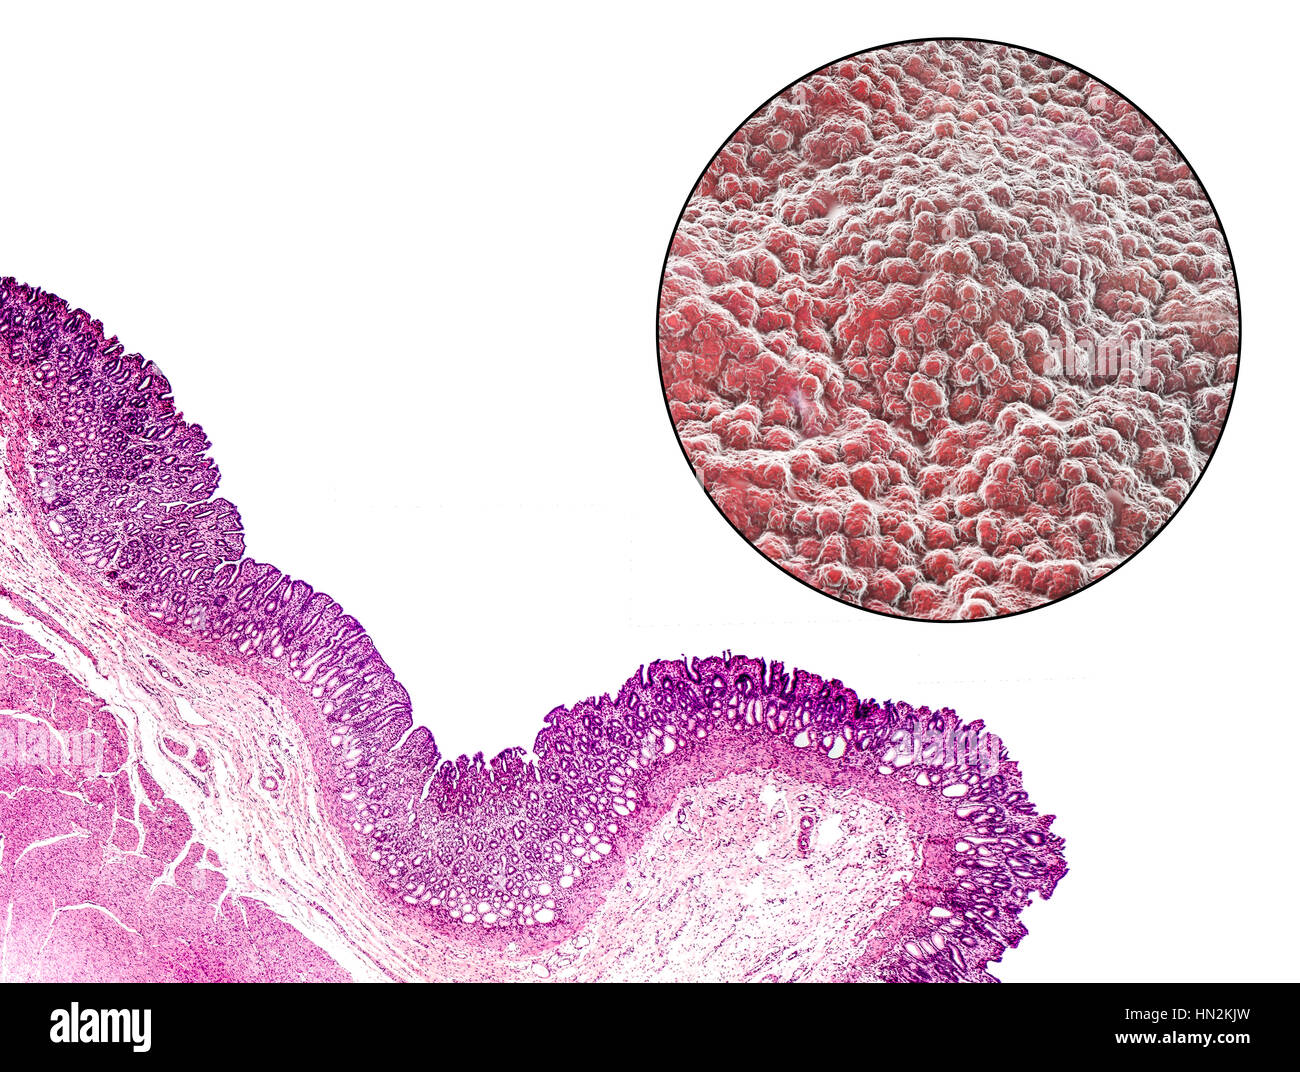 Magen-Schleimhaut. Leichte Schliffbild (unten links) und Computer Bild (oben rechts) von der Schleimhaut des Magens, bekannt als die Schleimhaut. Der Magen ist ein muskulöser Sac Lagerung und Verdauung der Nahrung beteiligt. Die Oberfläche der Schleimhaut besteht aus einfachen säulenartigen Zellen (dunkelviolett im Schliffbild), die Schleim absondern. Der Schleim schützt die Magenschleimhaut vor Verdauung Säuren und Enzyme, die auf Nahrung im Magen wirken. Unter die säulenartigen Zellen sind gastrische Gruben, die Drüsen, aus denen die Säuren und Enzyme notwendig, um Nahrung zu verdauen. Stockfoto